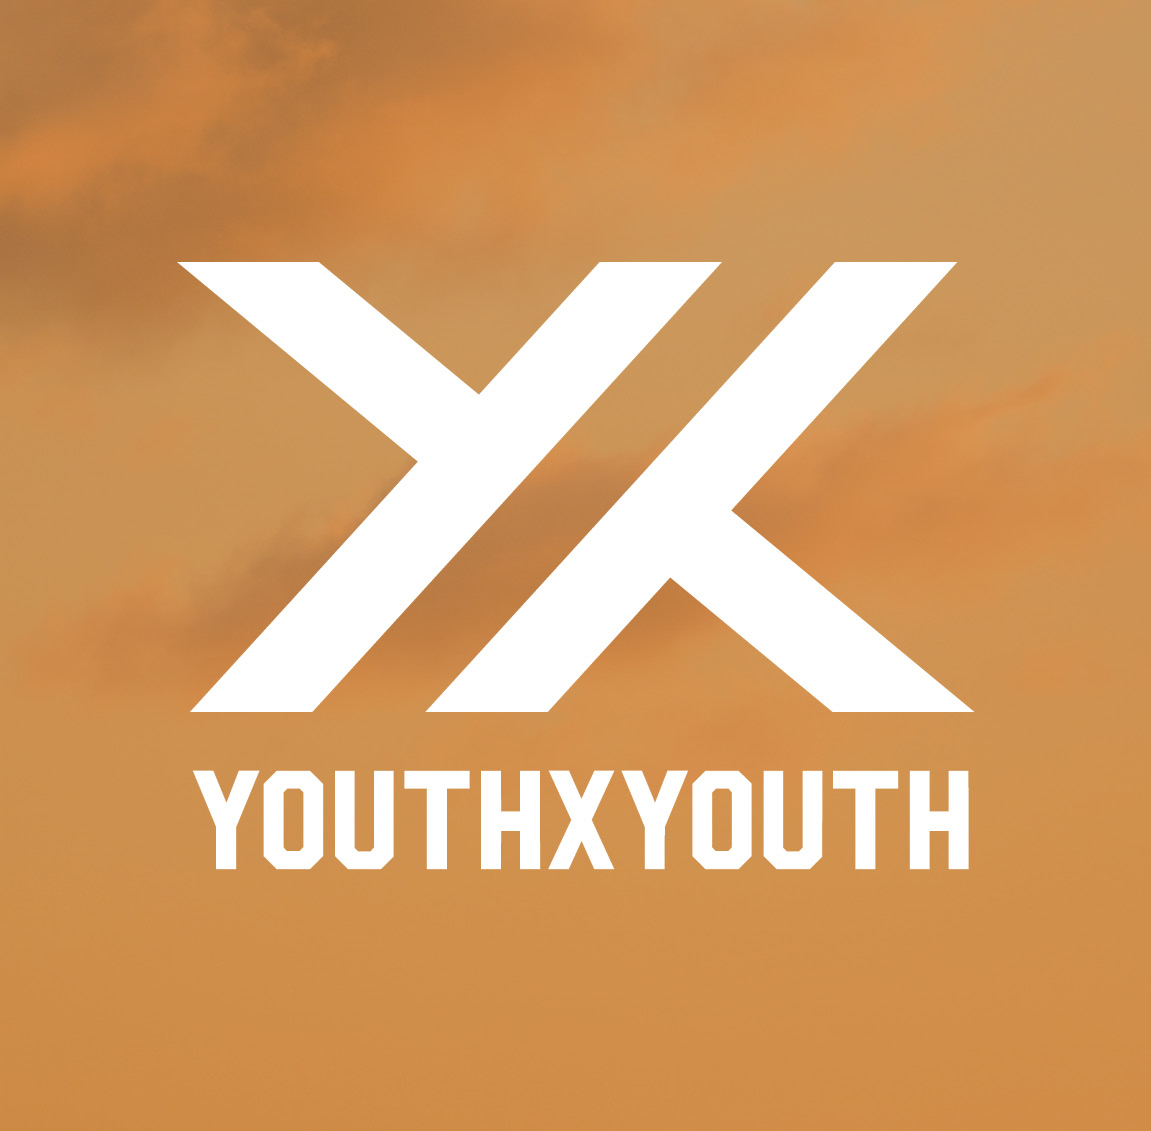 YouthxYouth logo